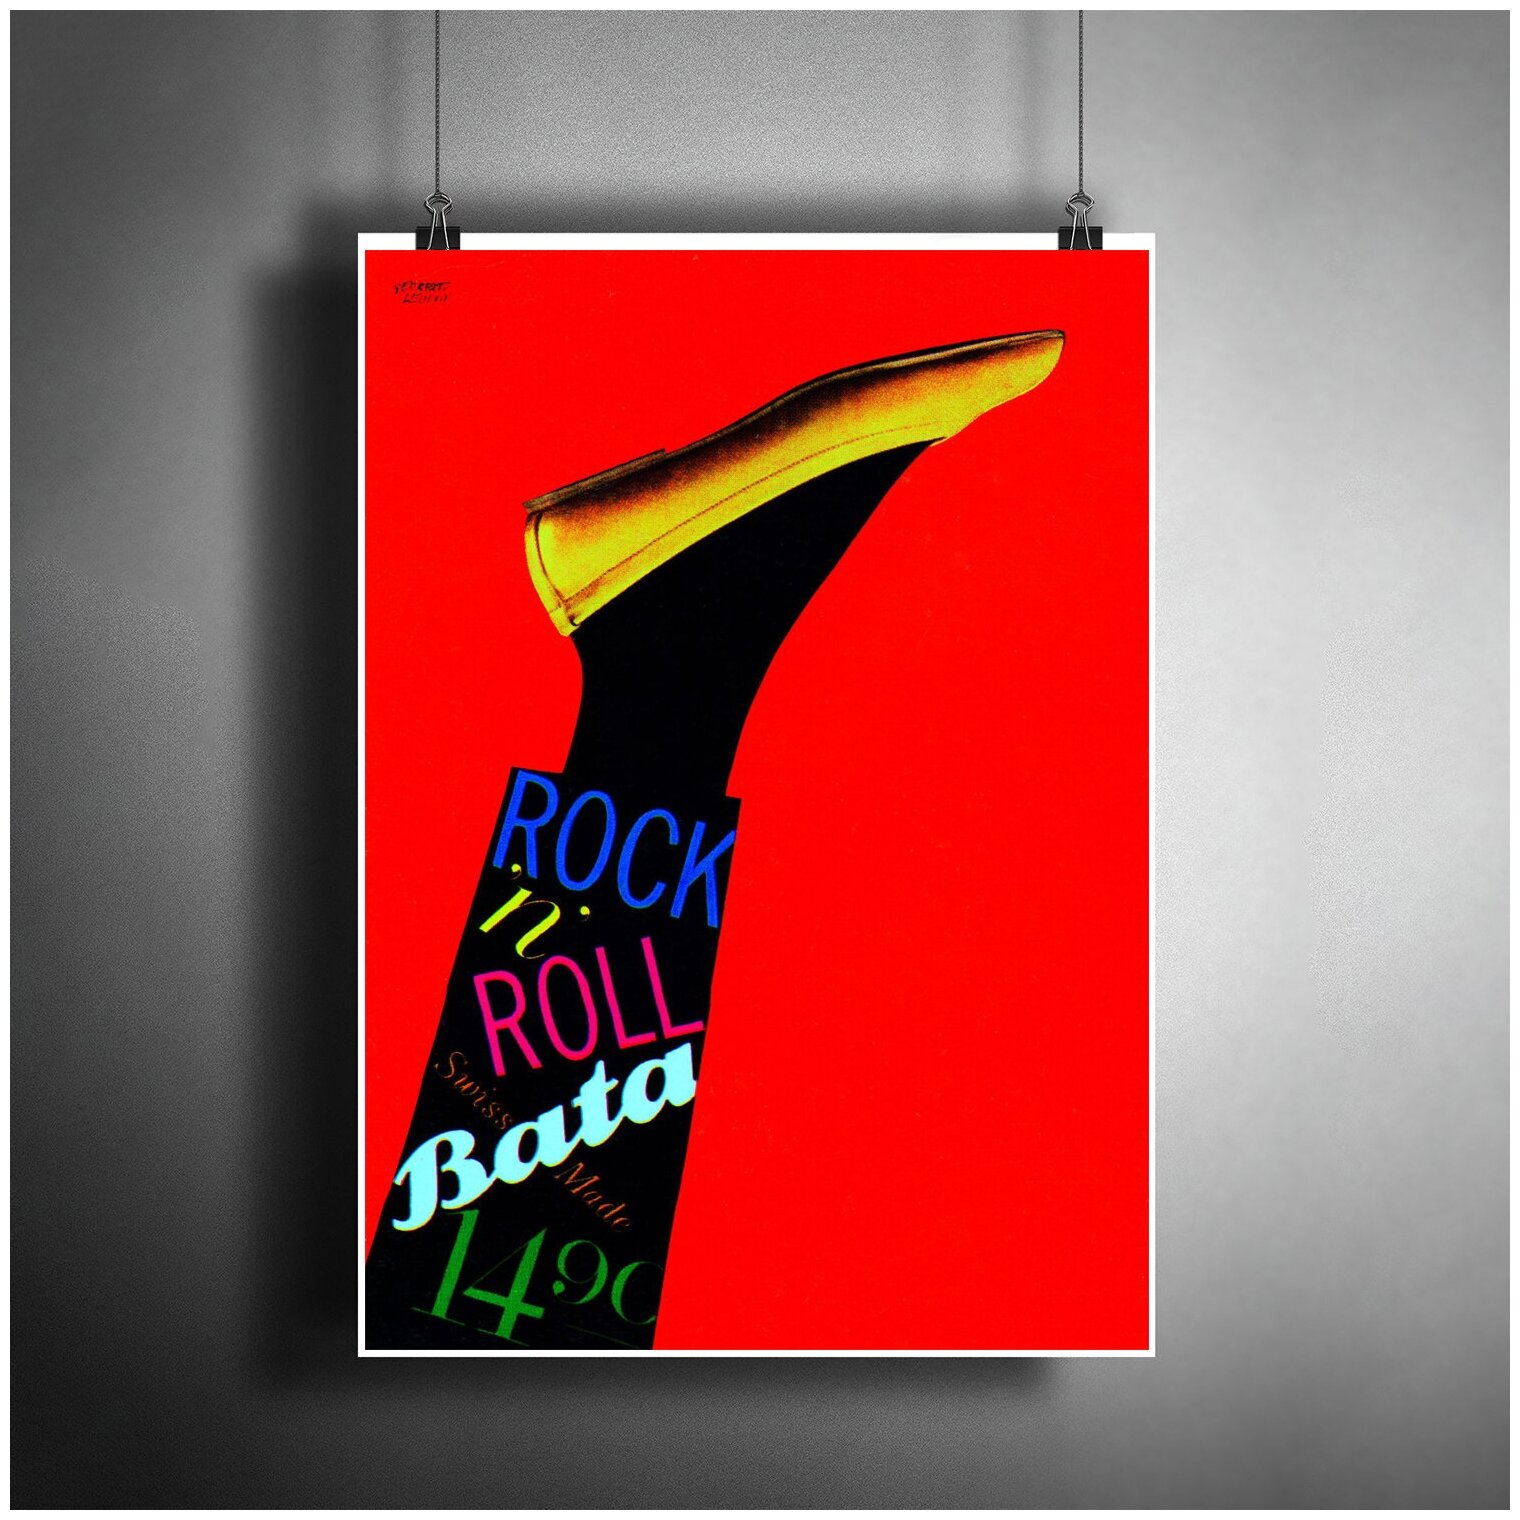 Постер плакат для интерьера "Швейцарский графический дизайнер Herbert Leupin - rock'n'roll batak" / Декор дома, офиса, комнаты A3 (297 x 420 мм)